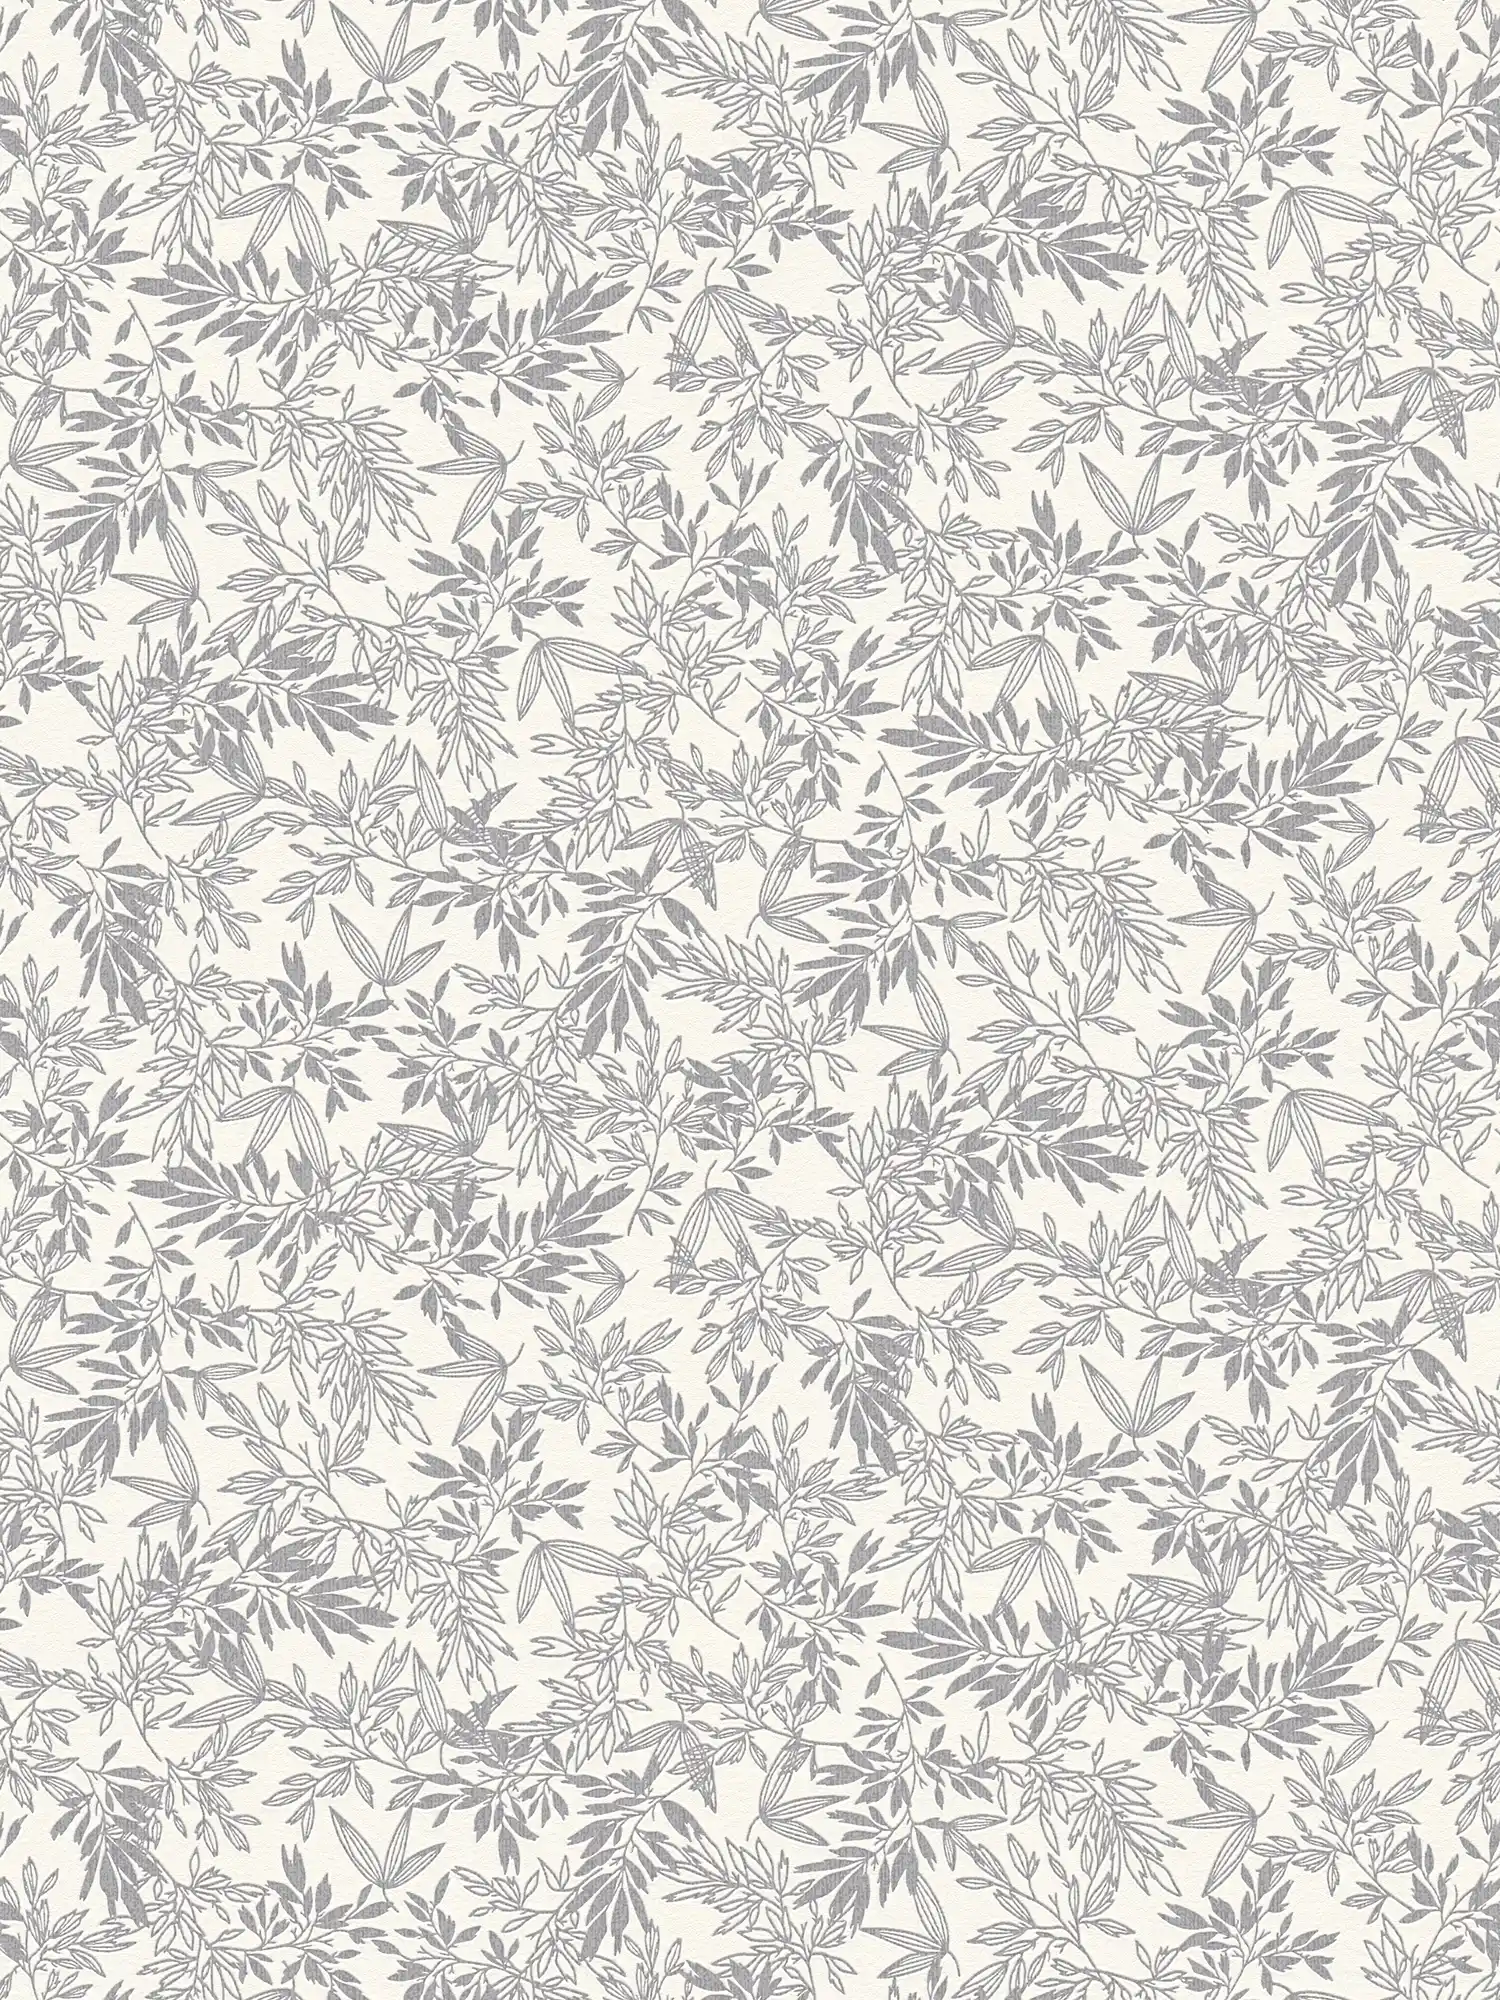 Bloemrijkbehang met bladmotief in mat - grijs, wit
